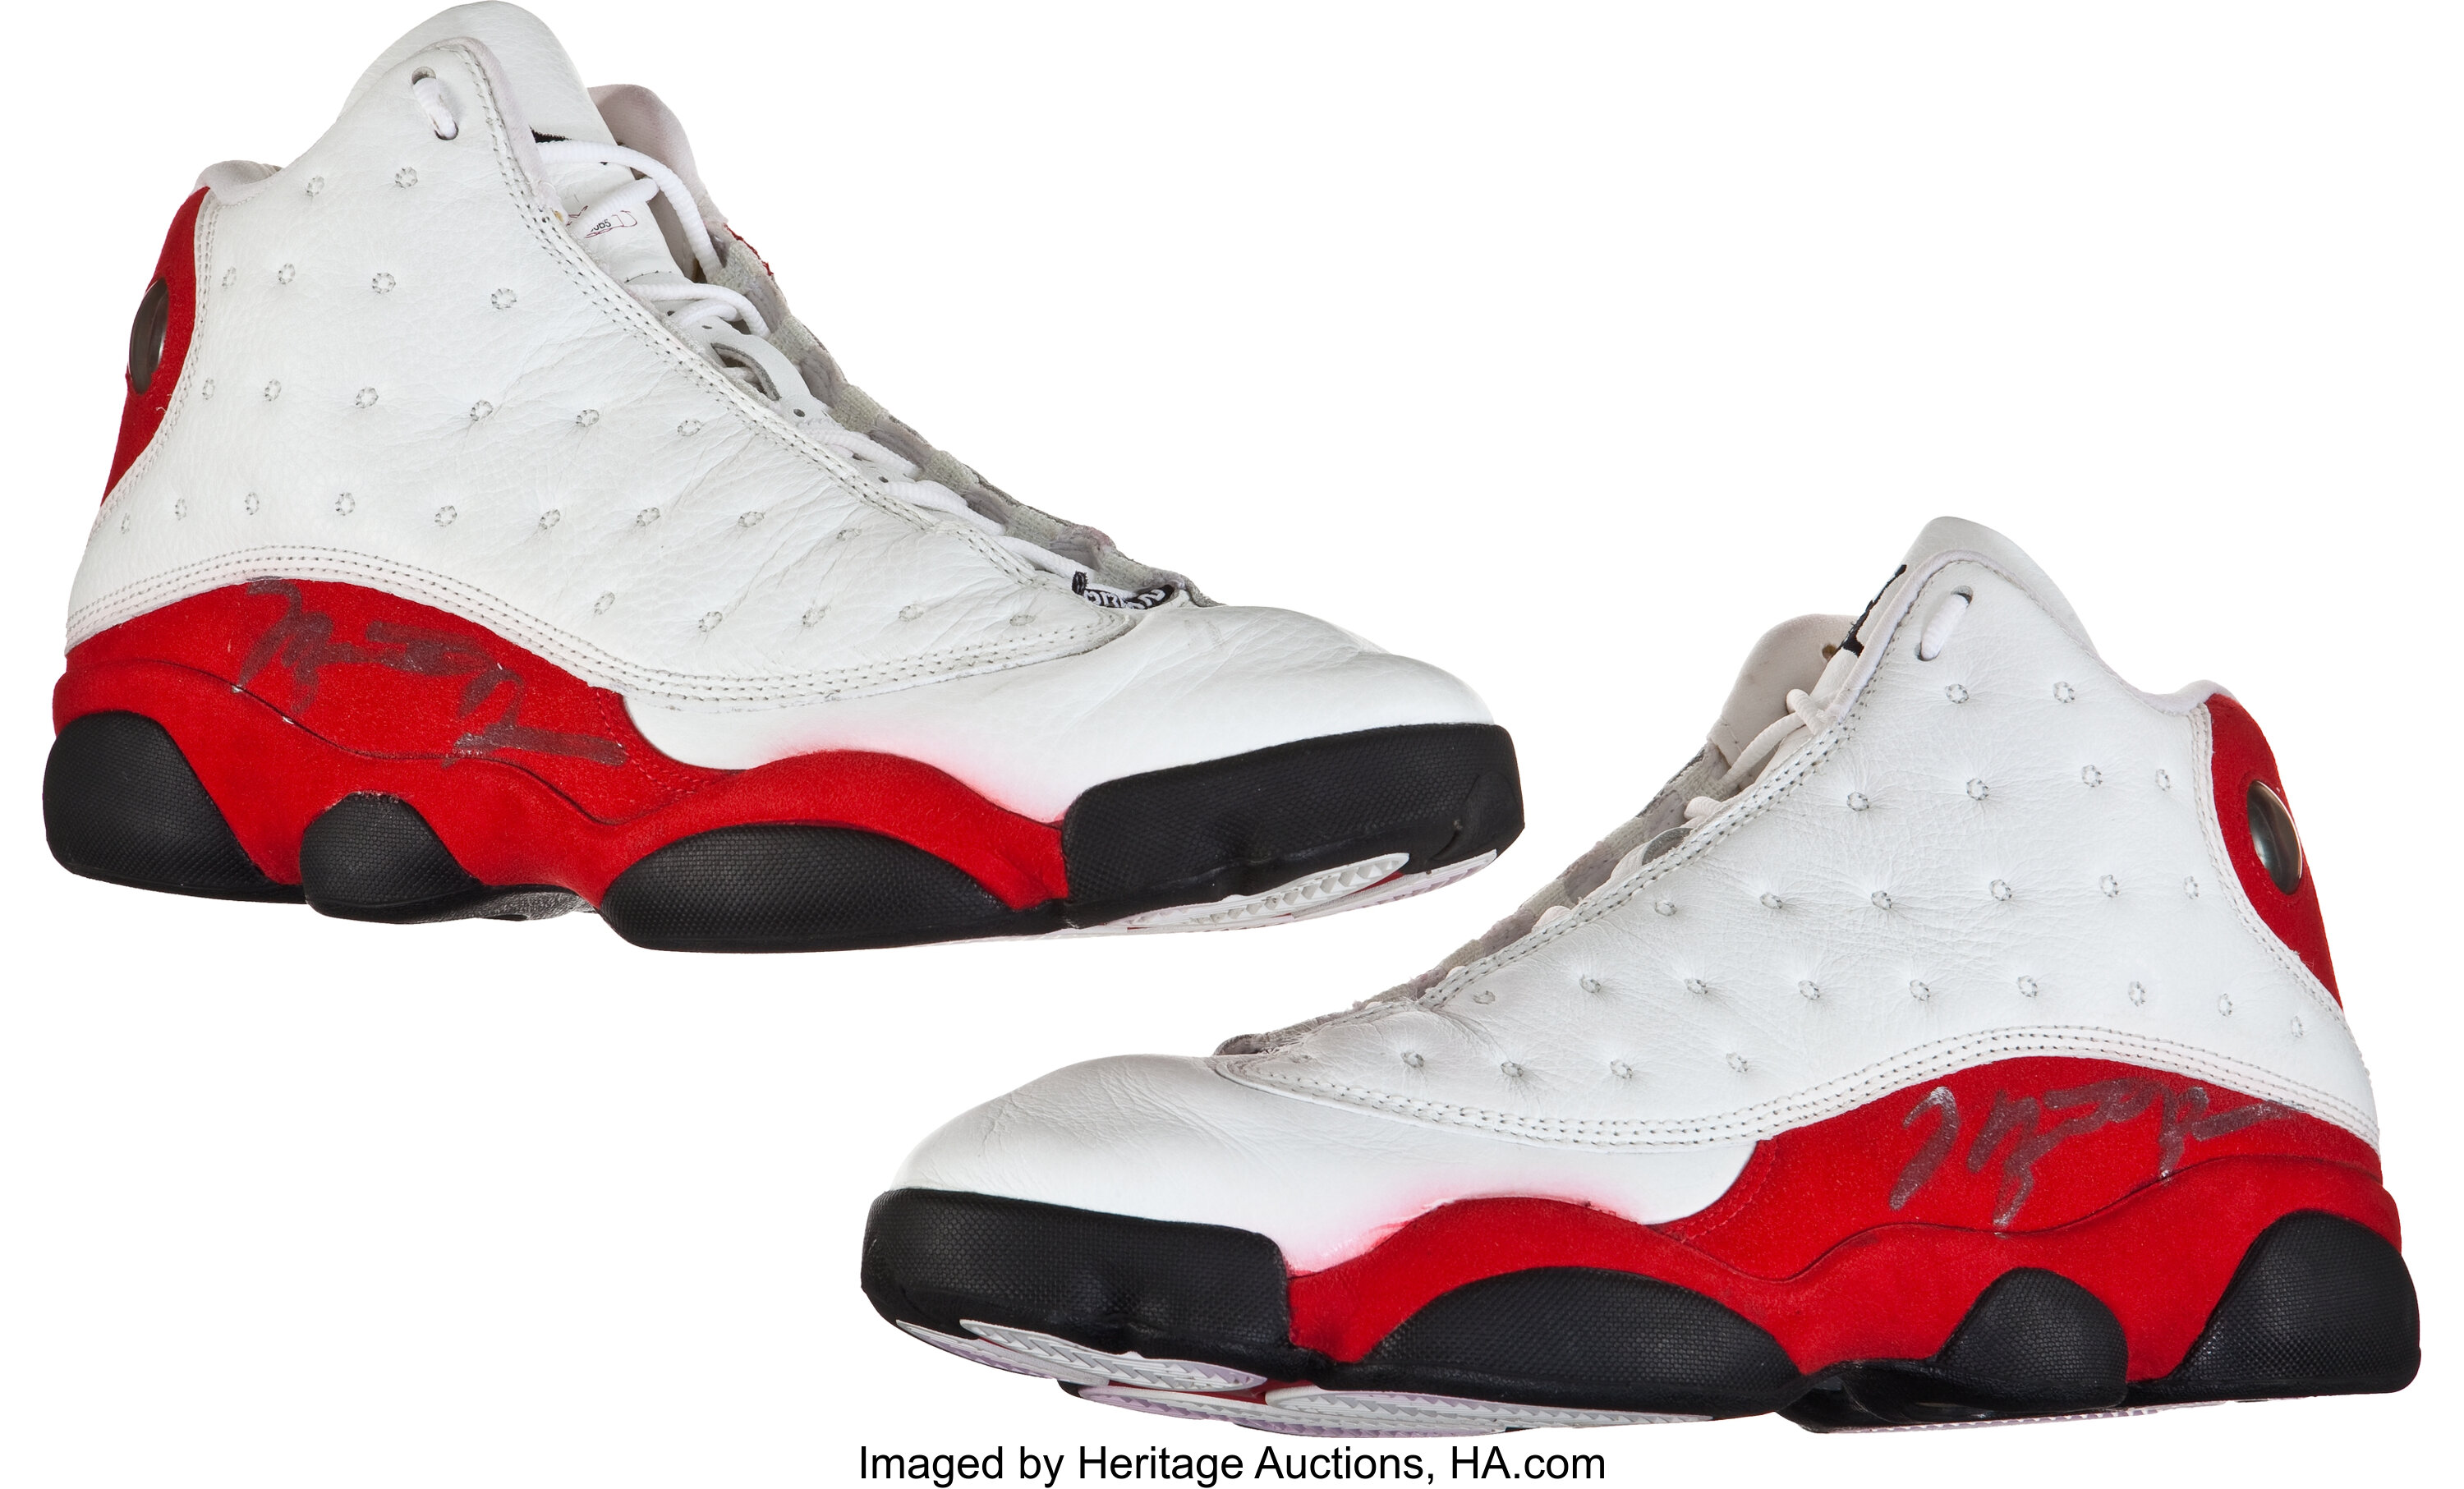 1997-98 Michael Jordan Game Worn, Signed Nike Air | Lot #81420 | Heritage